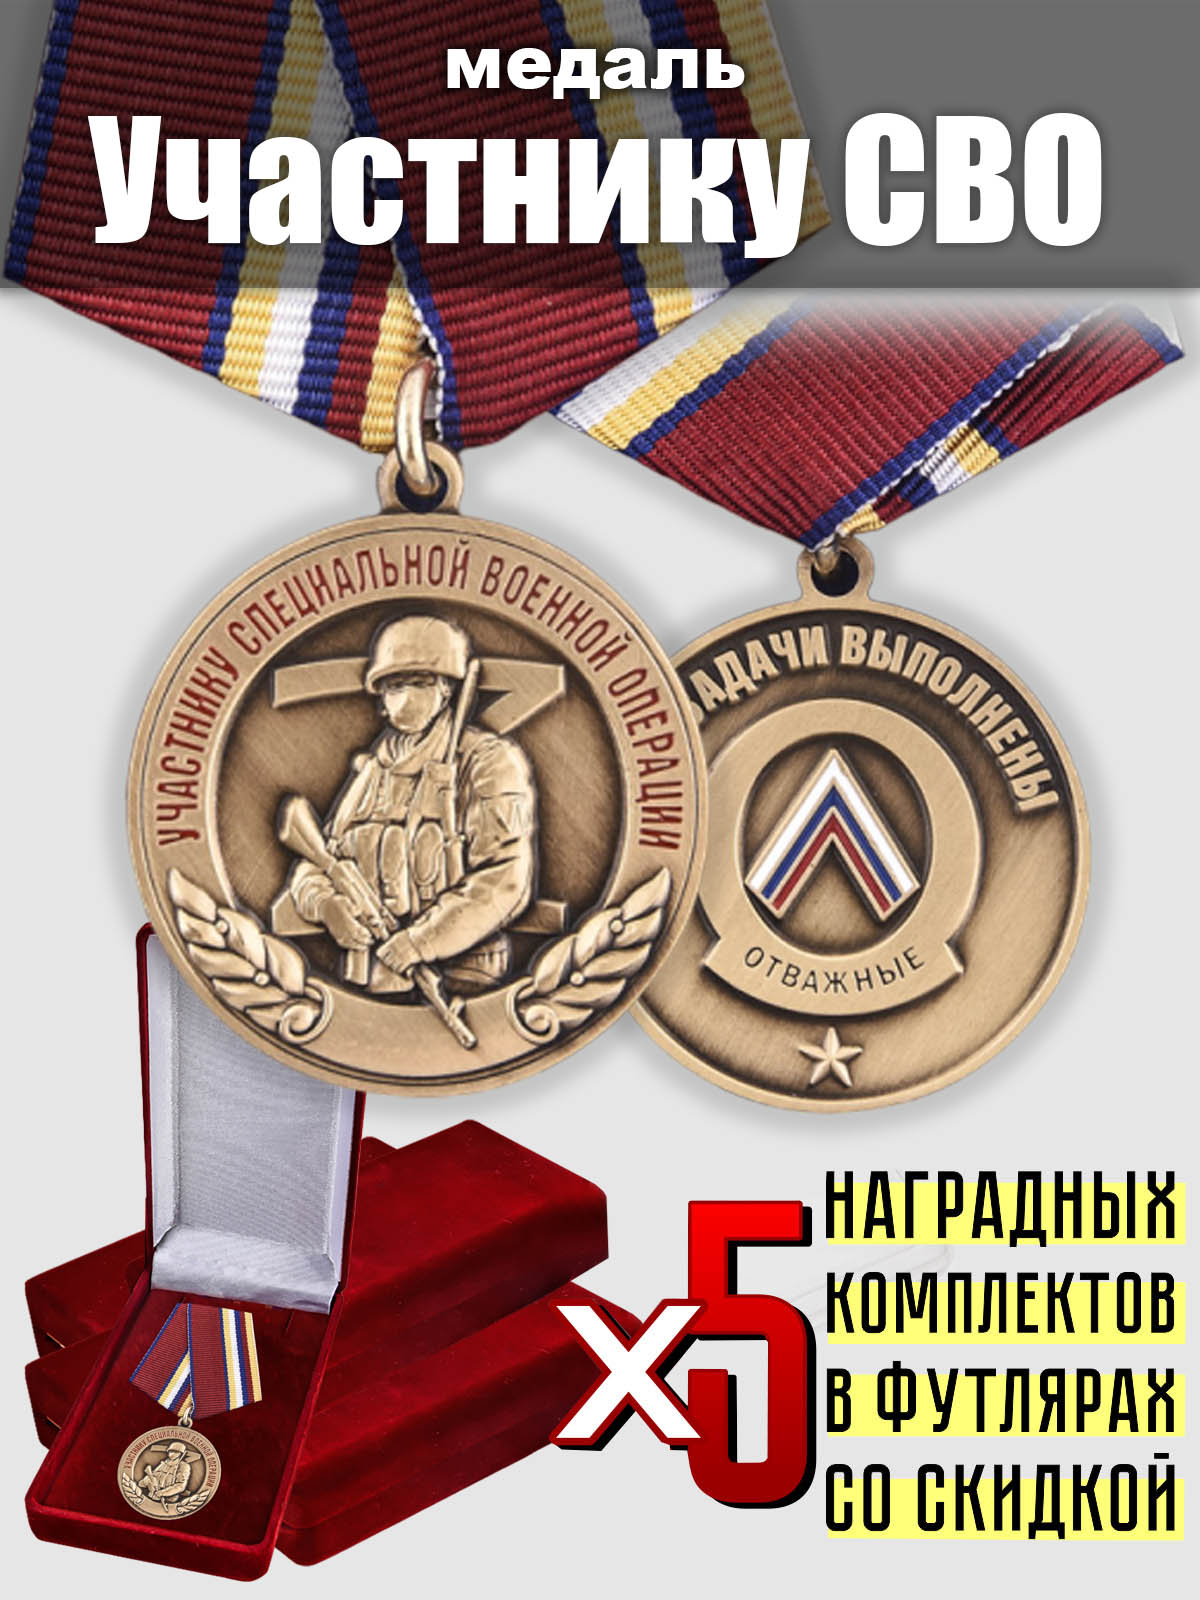 Наградной комплект медалей "Участнику СВО" (5 шт) 